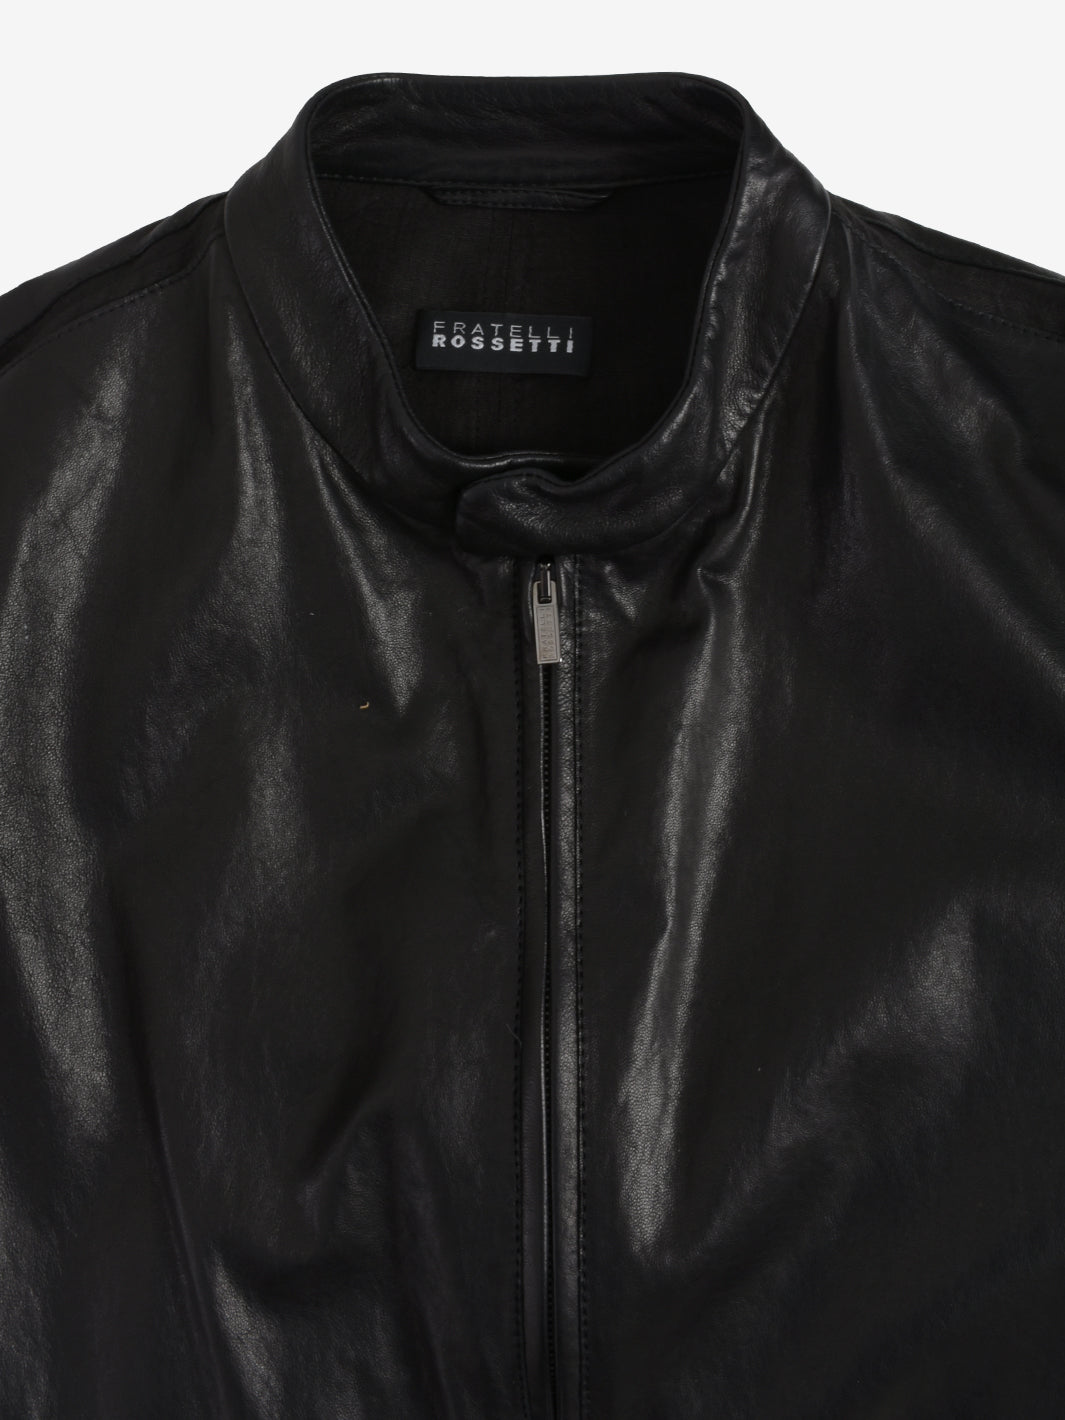 Fratelli Rossetti Leather Jacket